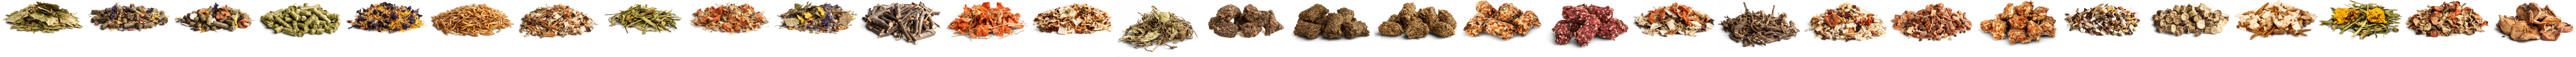 Nutcracker  - Seed mix with hazelnuts